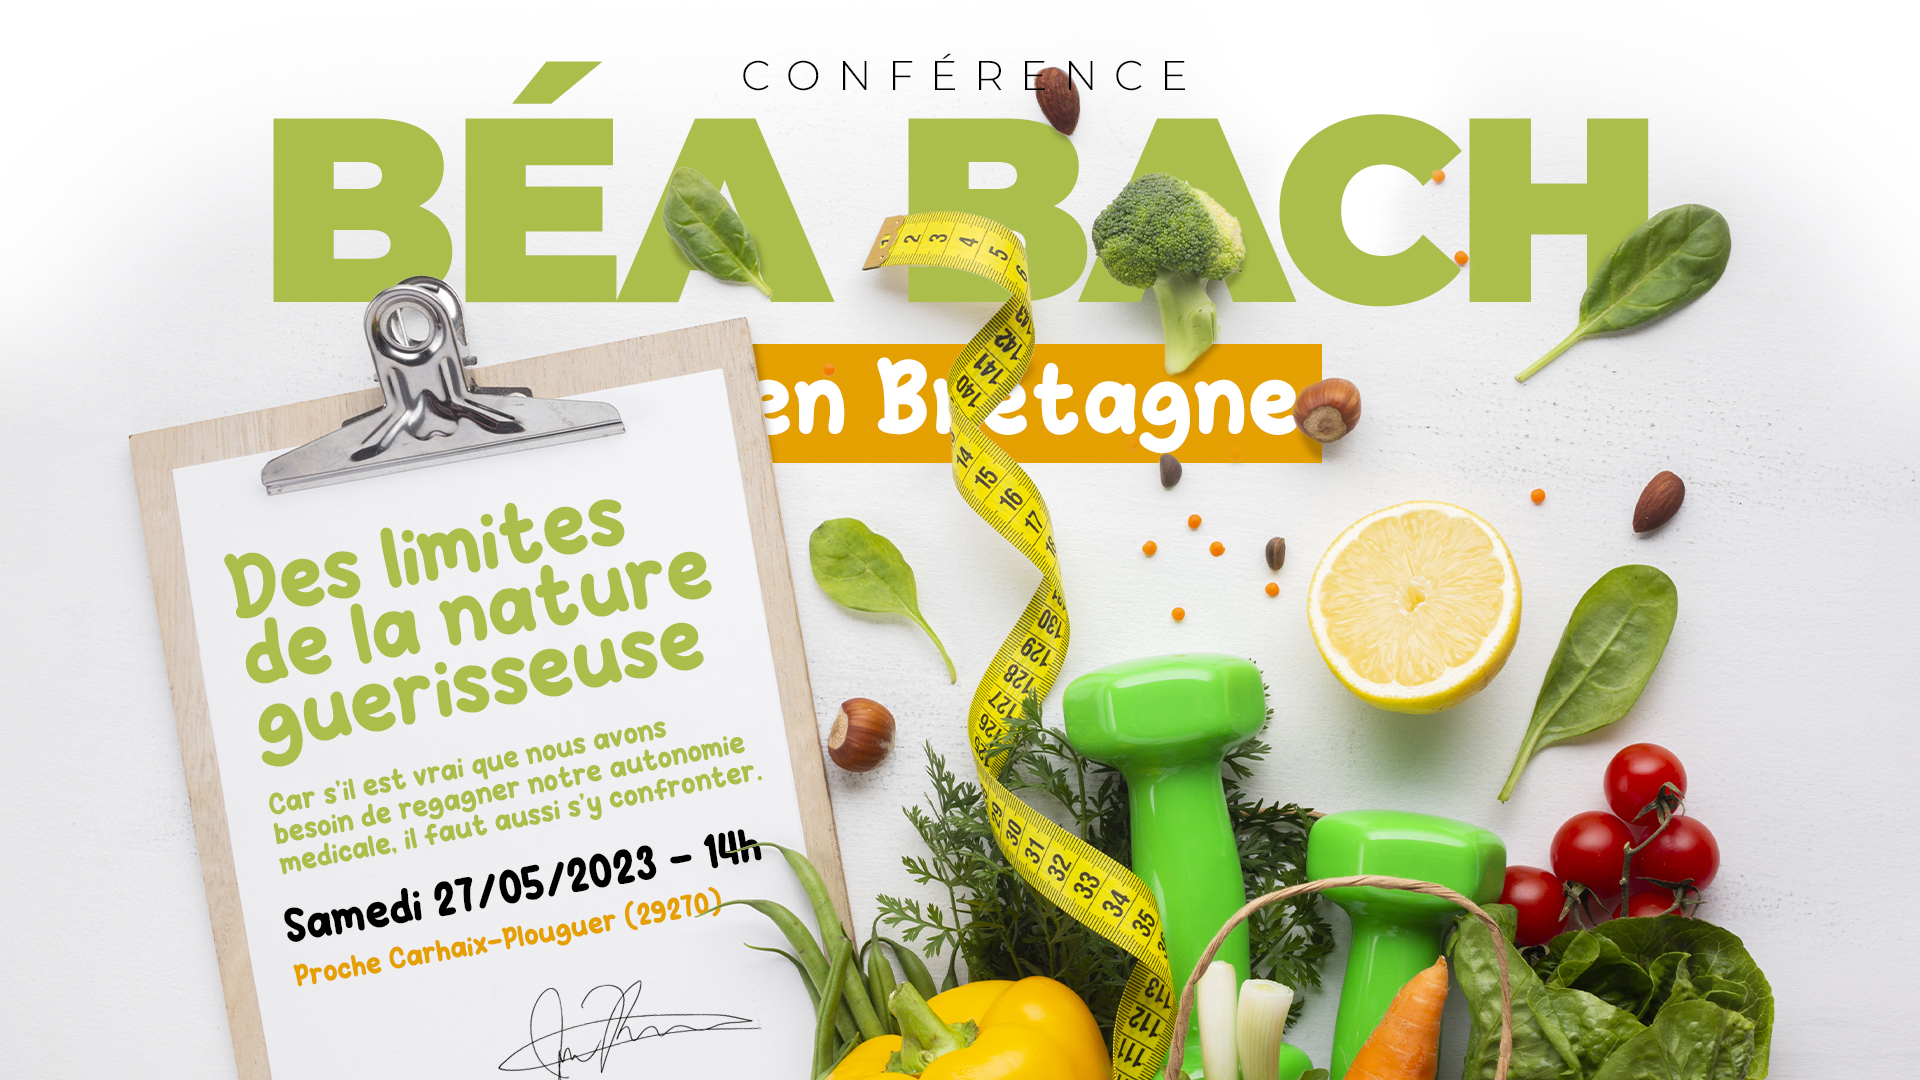 Des limites de la nature guérisseuse – Conférence de Béa Bach à Carhaix-Plouguer